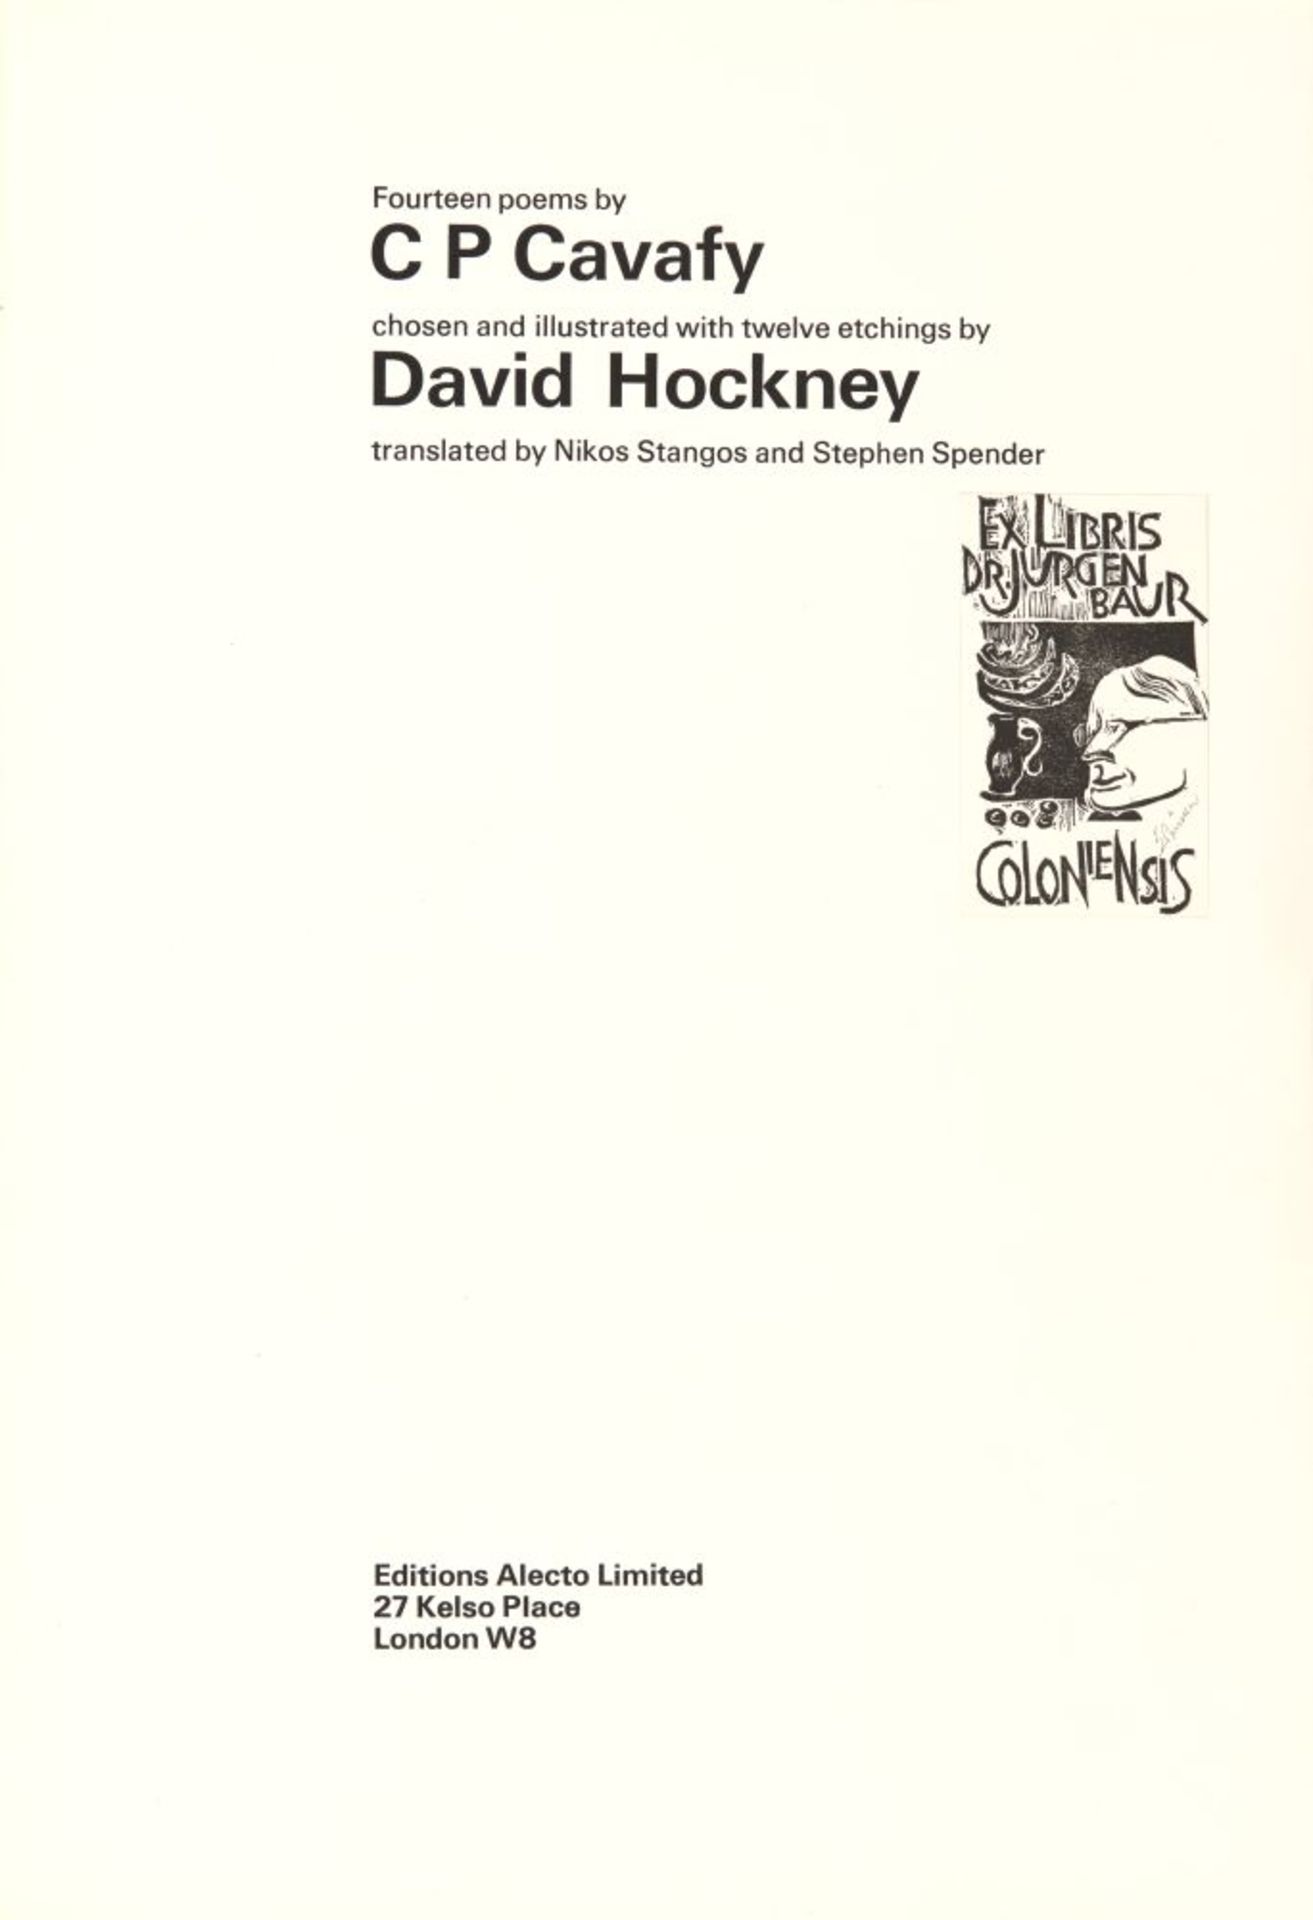 C. P. Cavafy / D. Hockney, Fourteen poems. Ldn 1967. - Eines von 250 Ex. der Edition B, sign. - Image 2 of 4